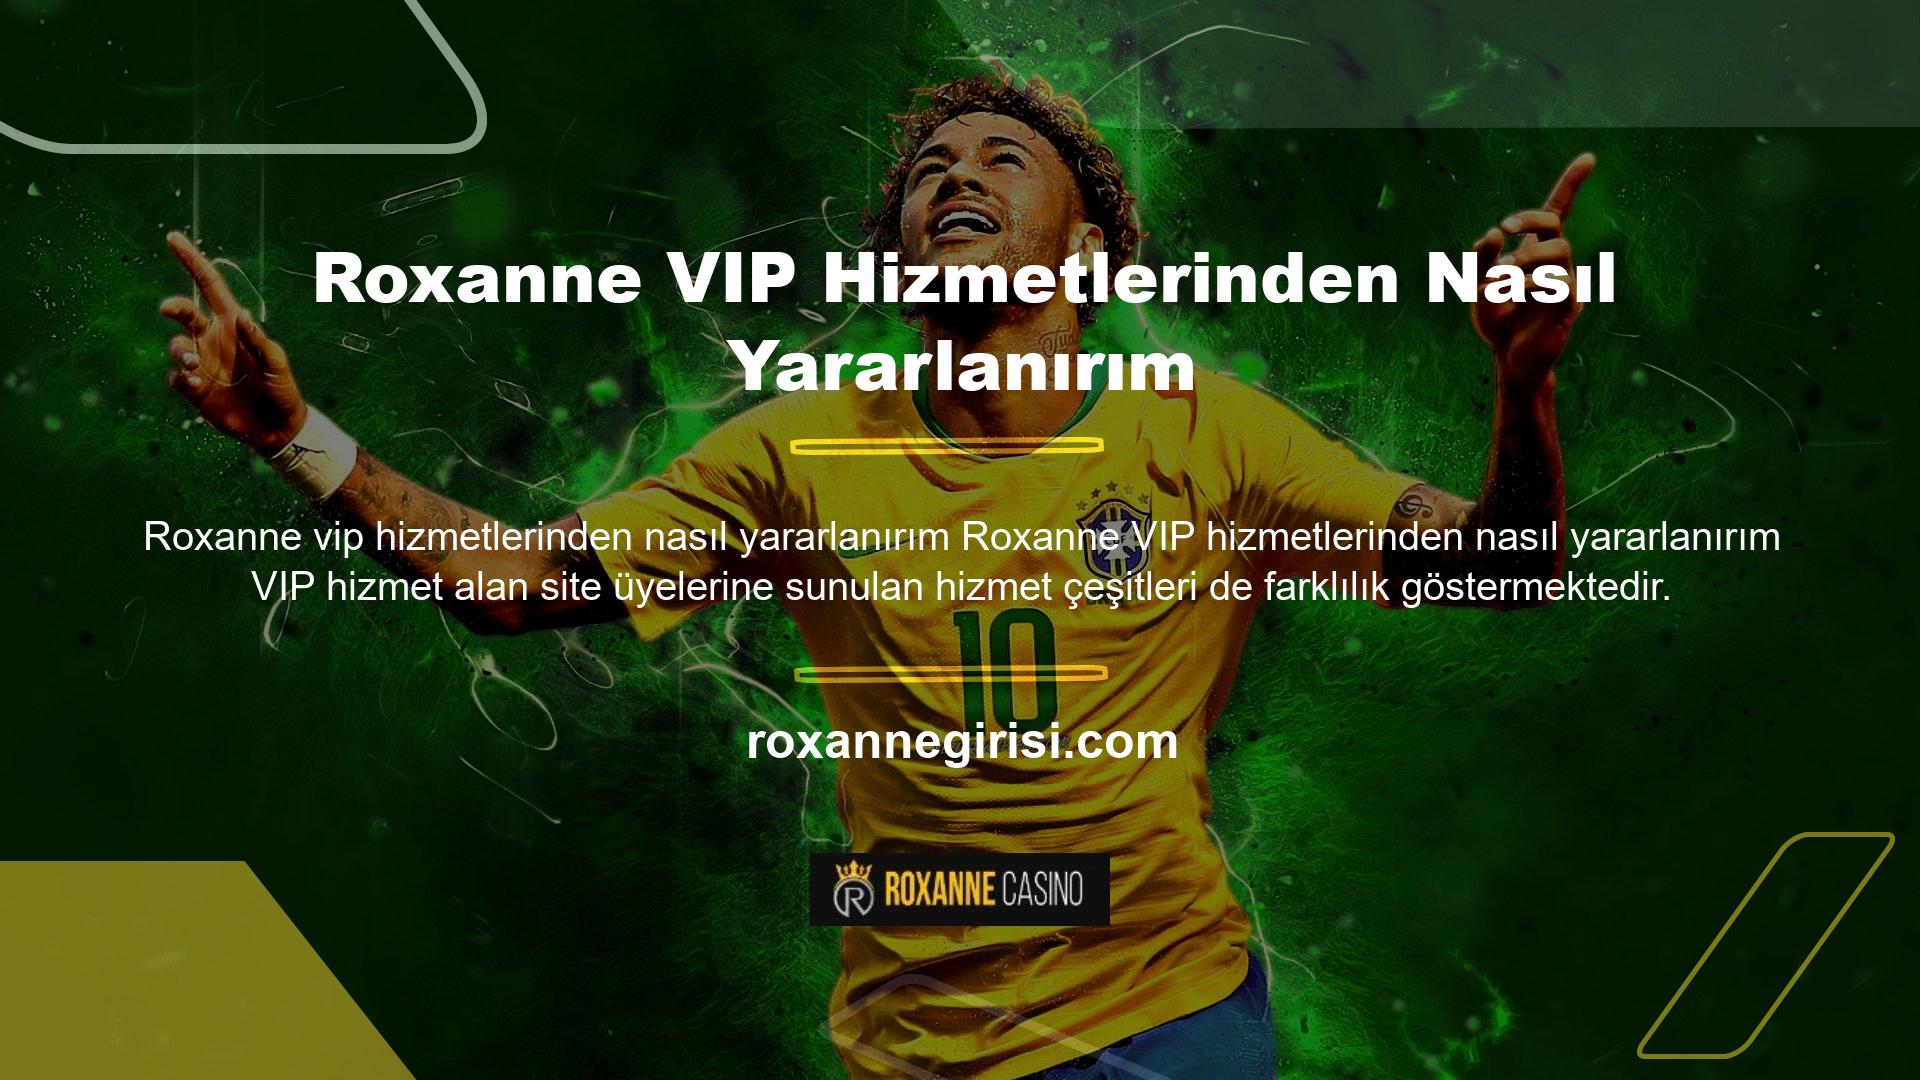 Roxanne, VIP hizmet programı aracılığıyla üyelerine kişisel destek sağlamaktadır